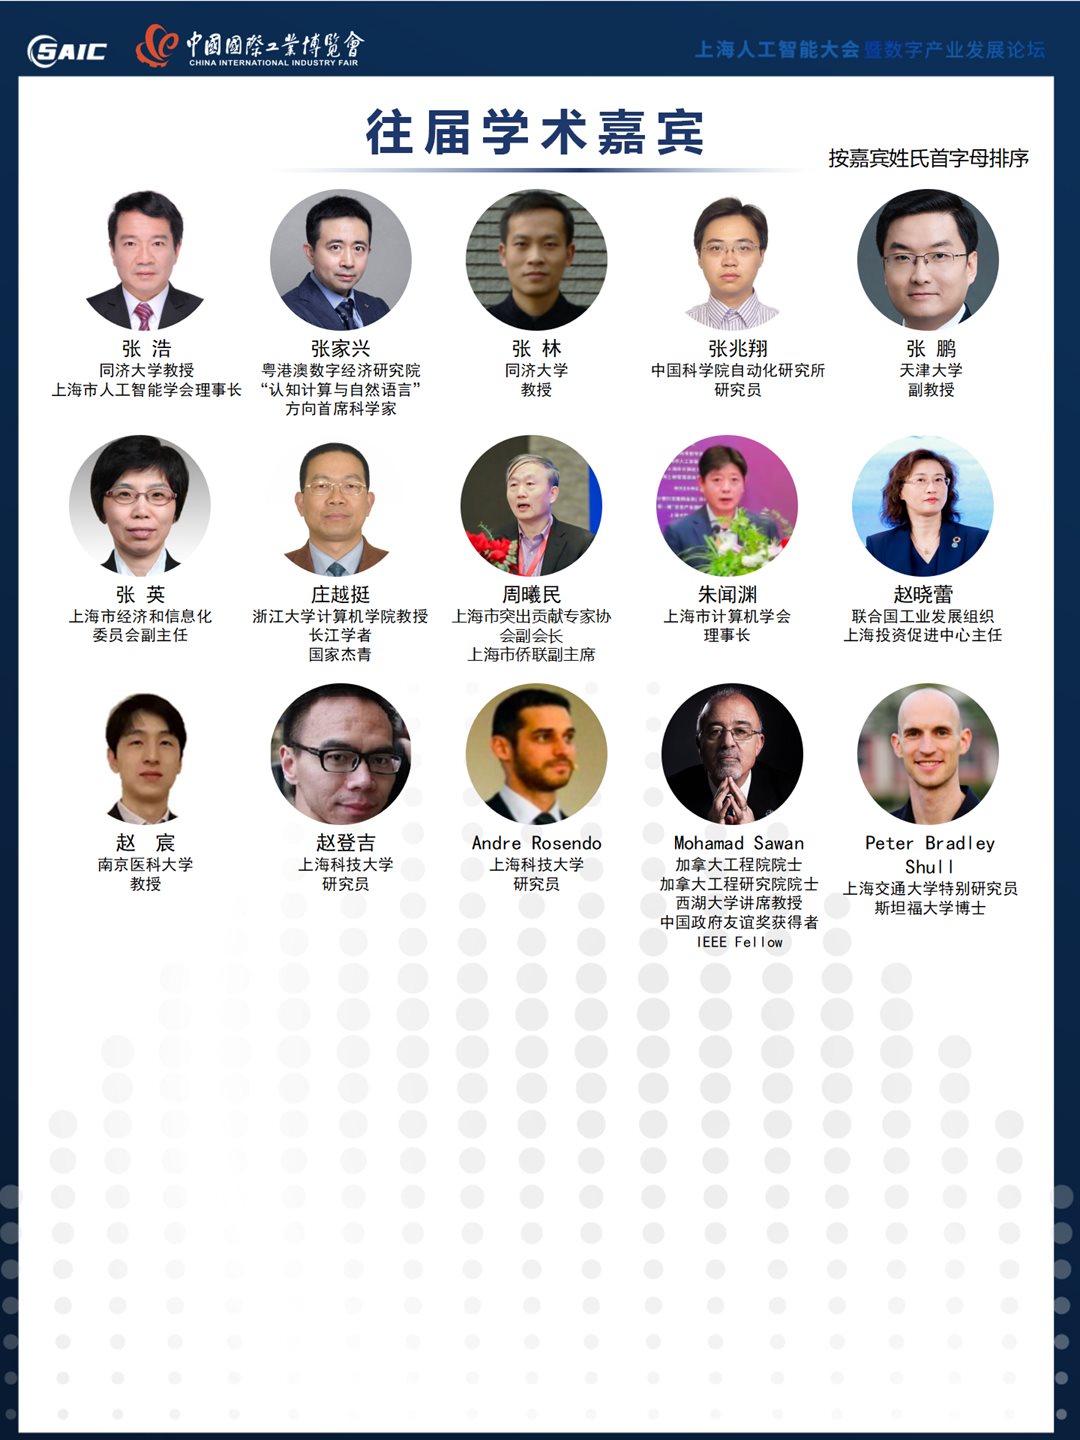 8th上海AI大会 大会合作方案 0517（对外）_10.png